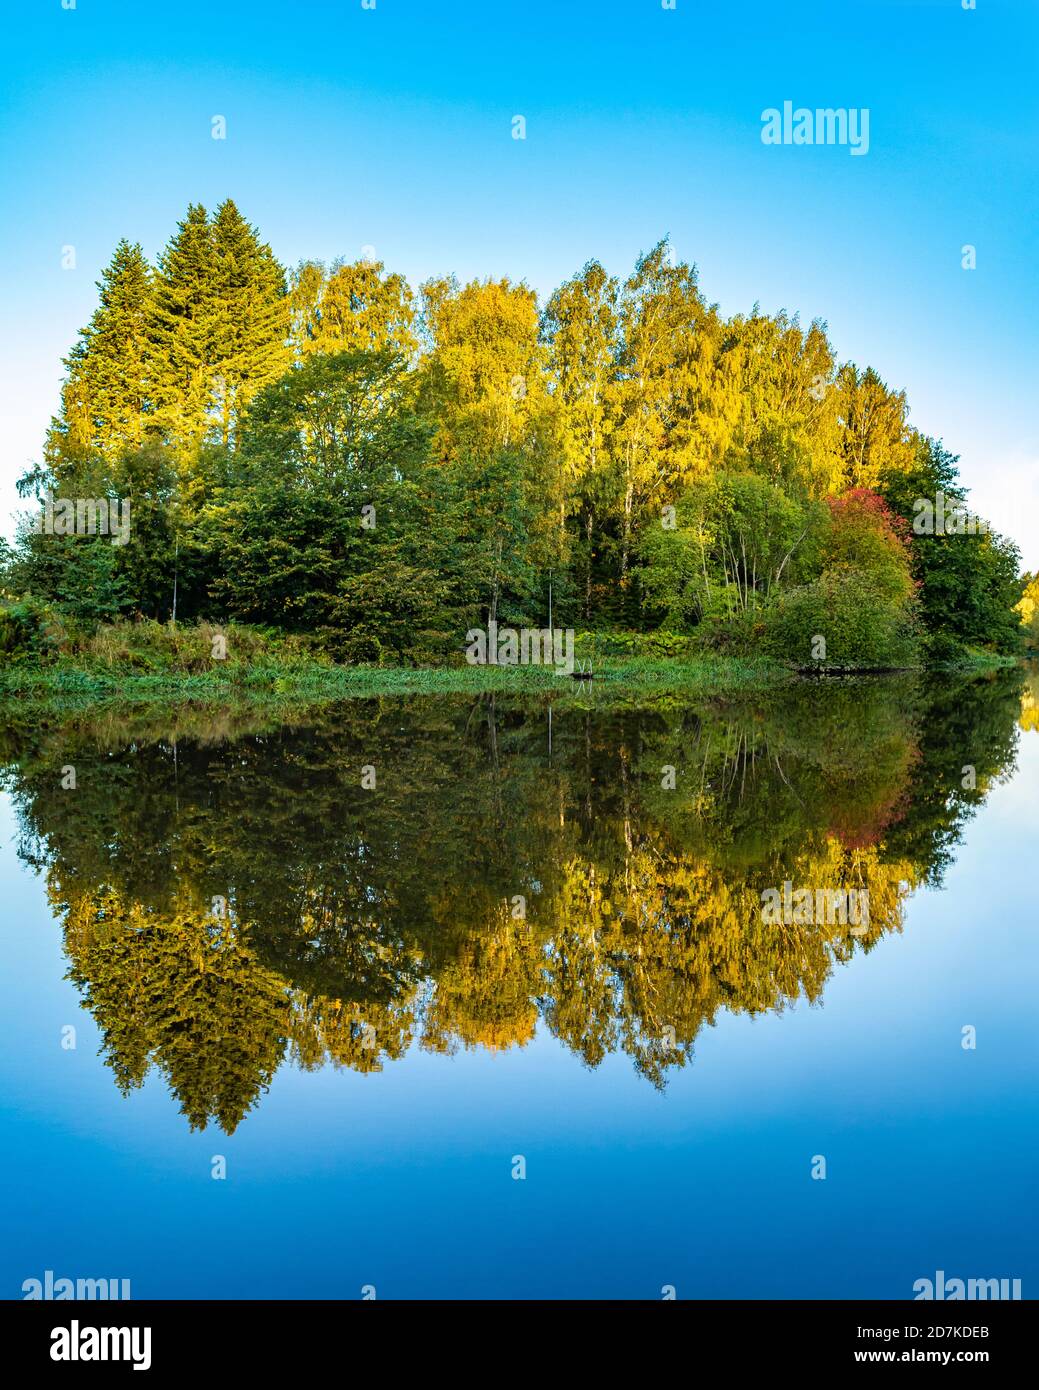 Paysage d'automne. Les arbres se reflètent sur une eau bleu calme. Forêt colorée reflétée dans le lac. Île. Arrière-plan bleu. Feuillage vert dans la lumière du matin. Banque D'Images